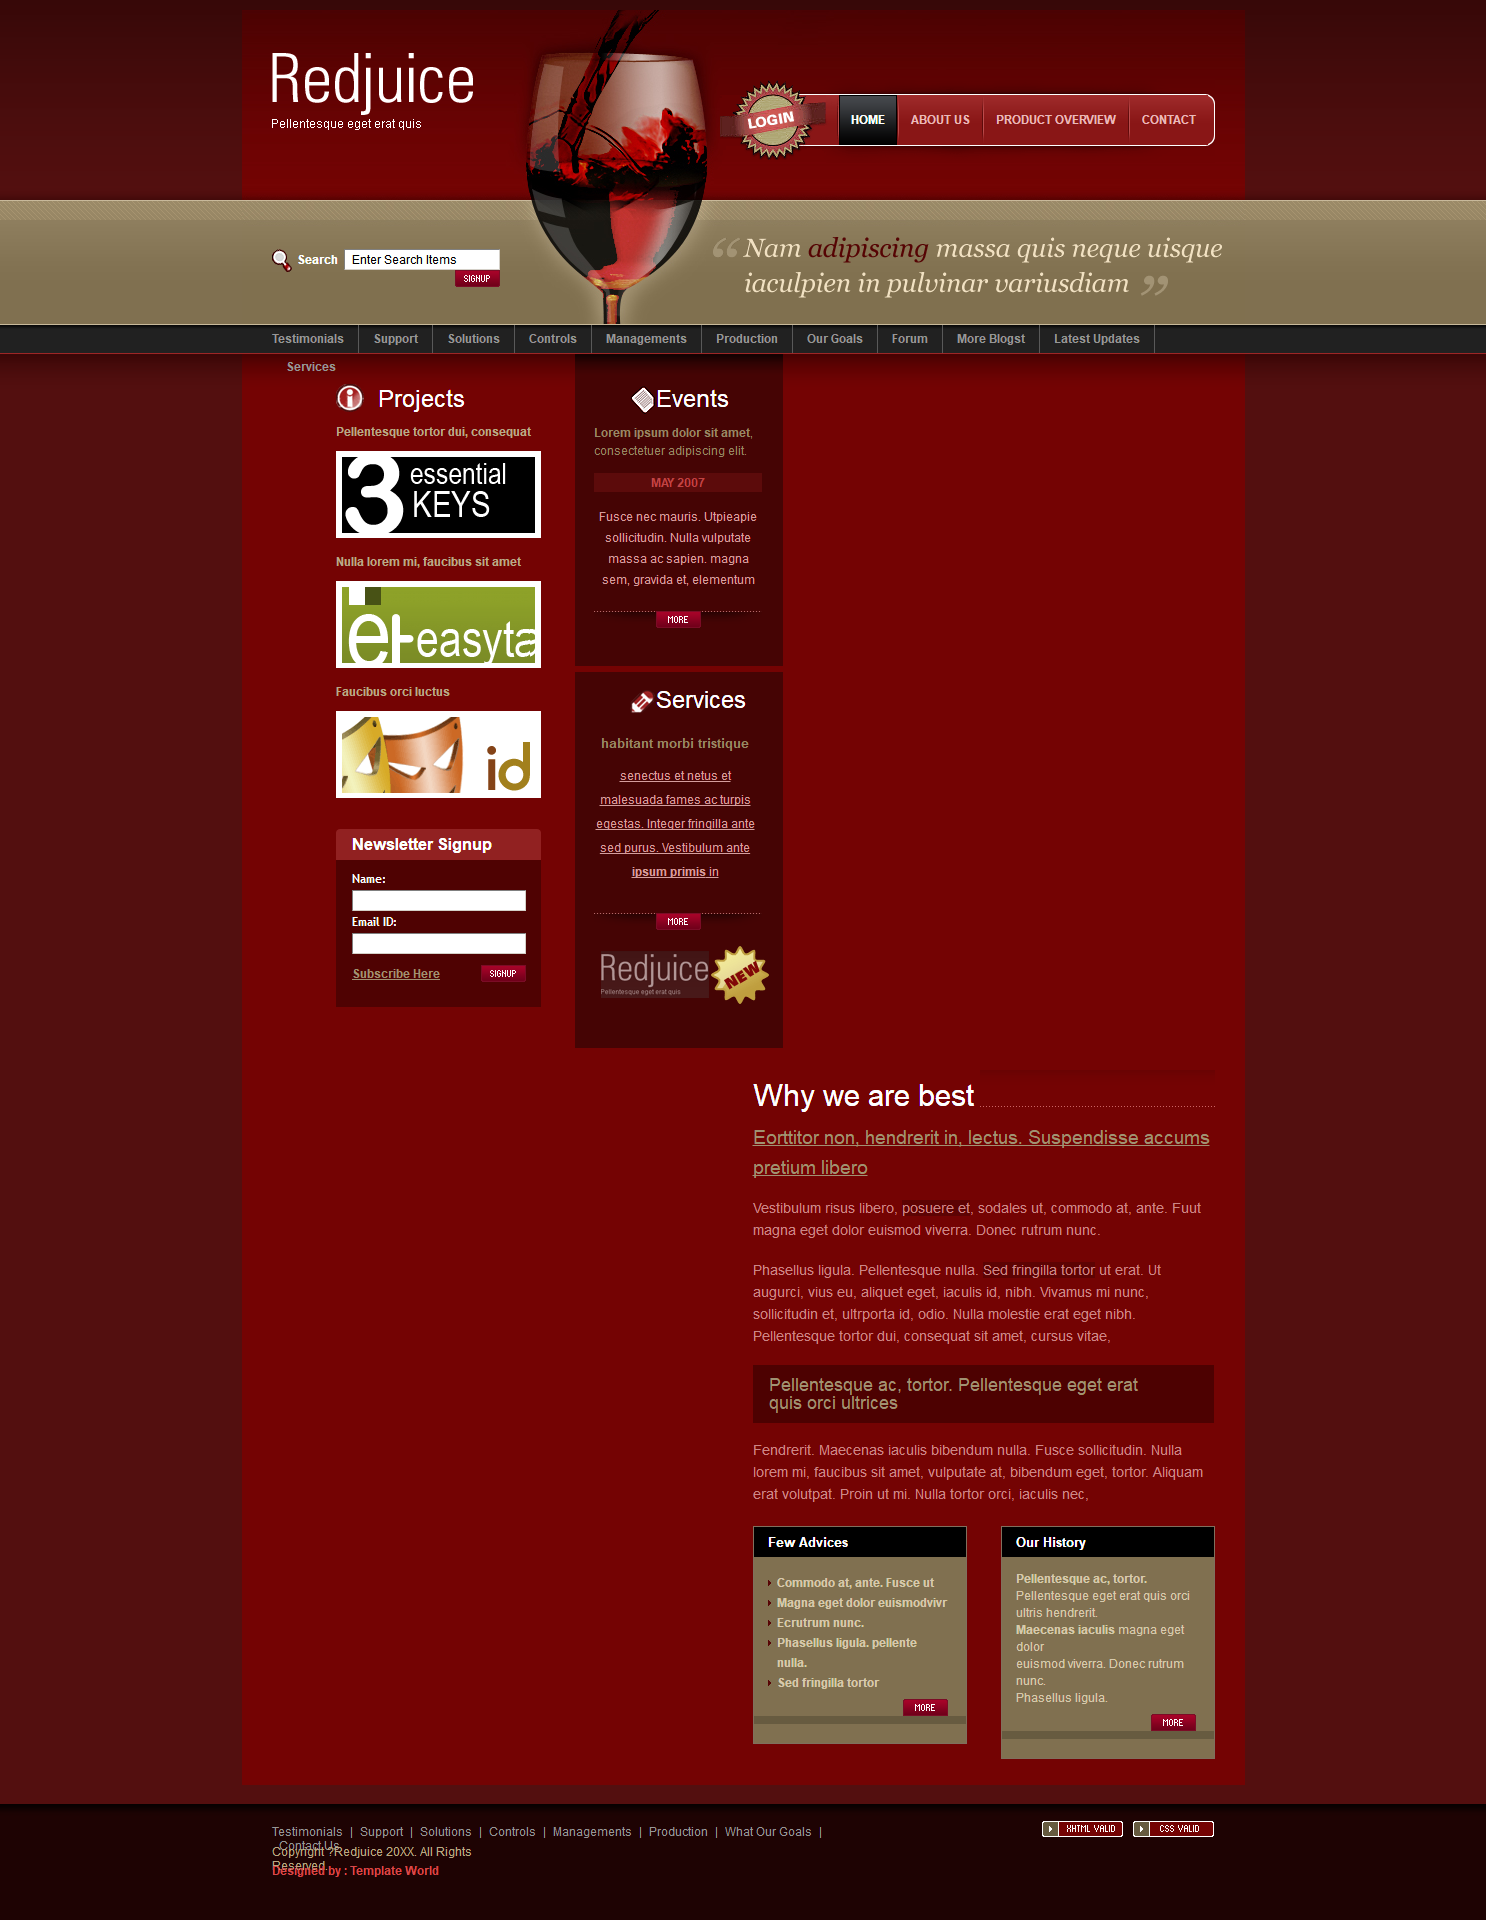 红色大气风格的红酒广告网站模板下载